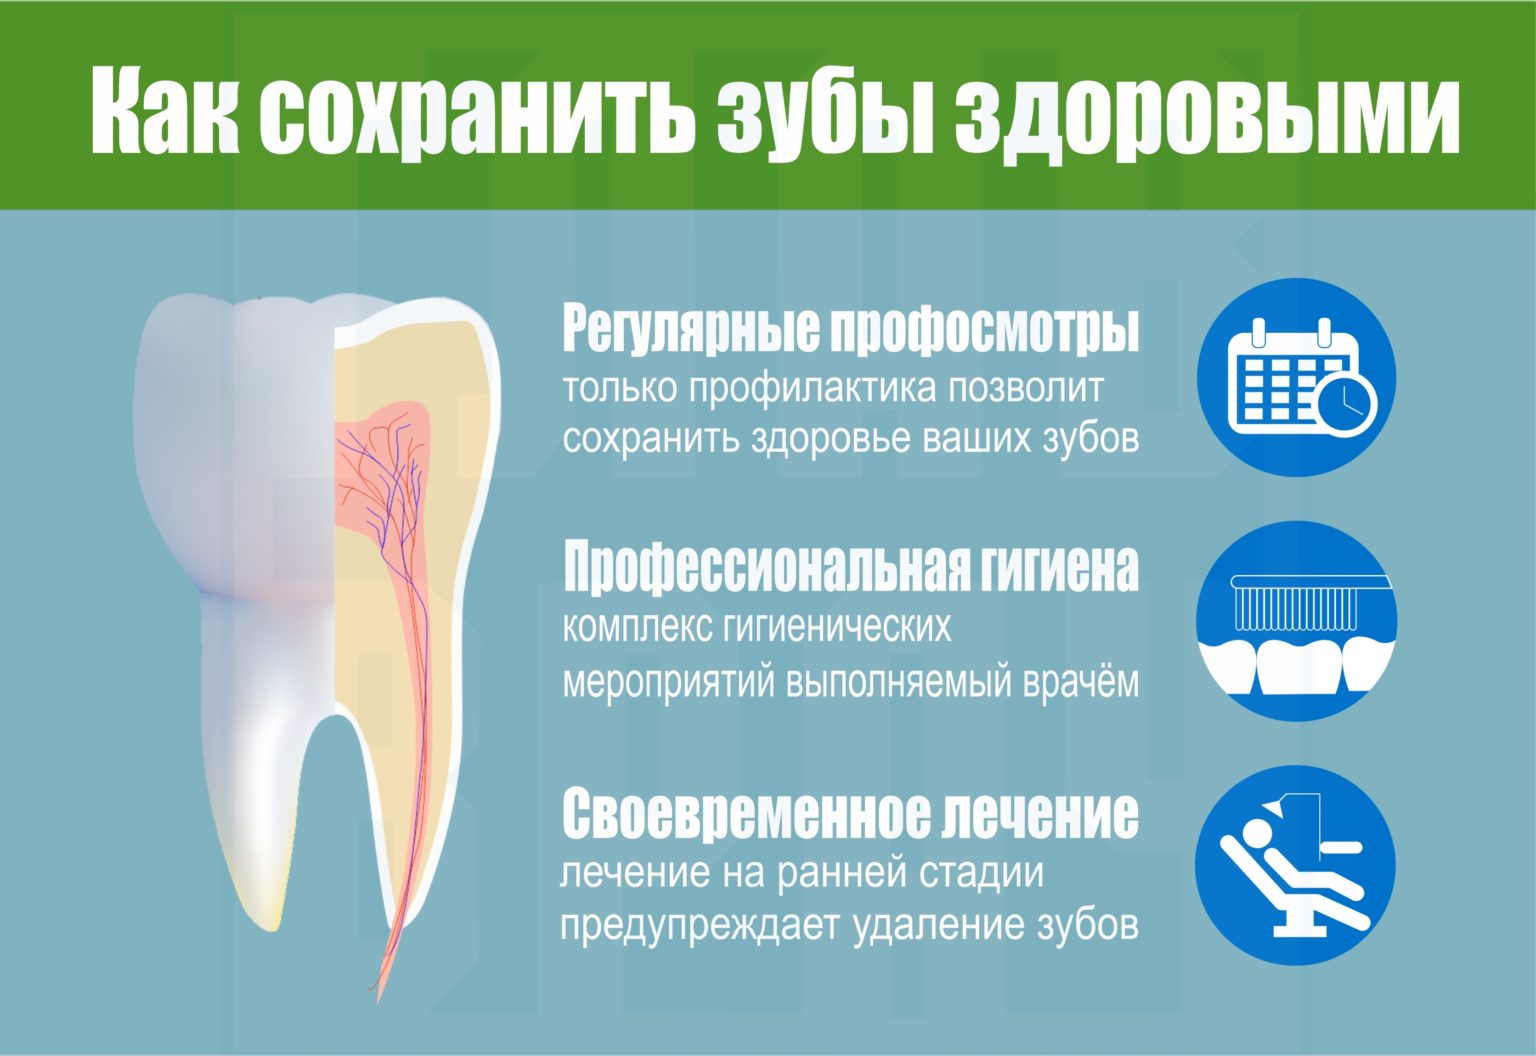 Как сохранить зубы здоровыми.jpg